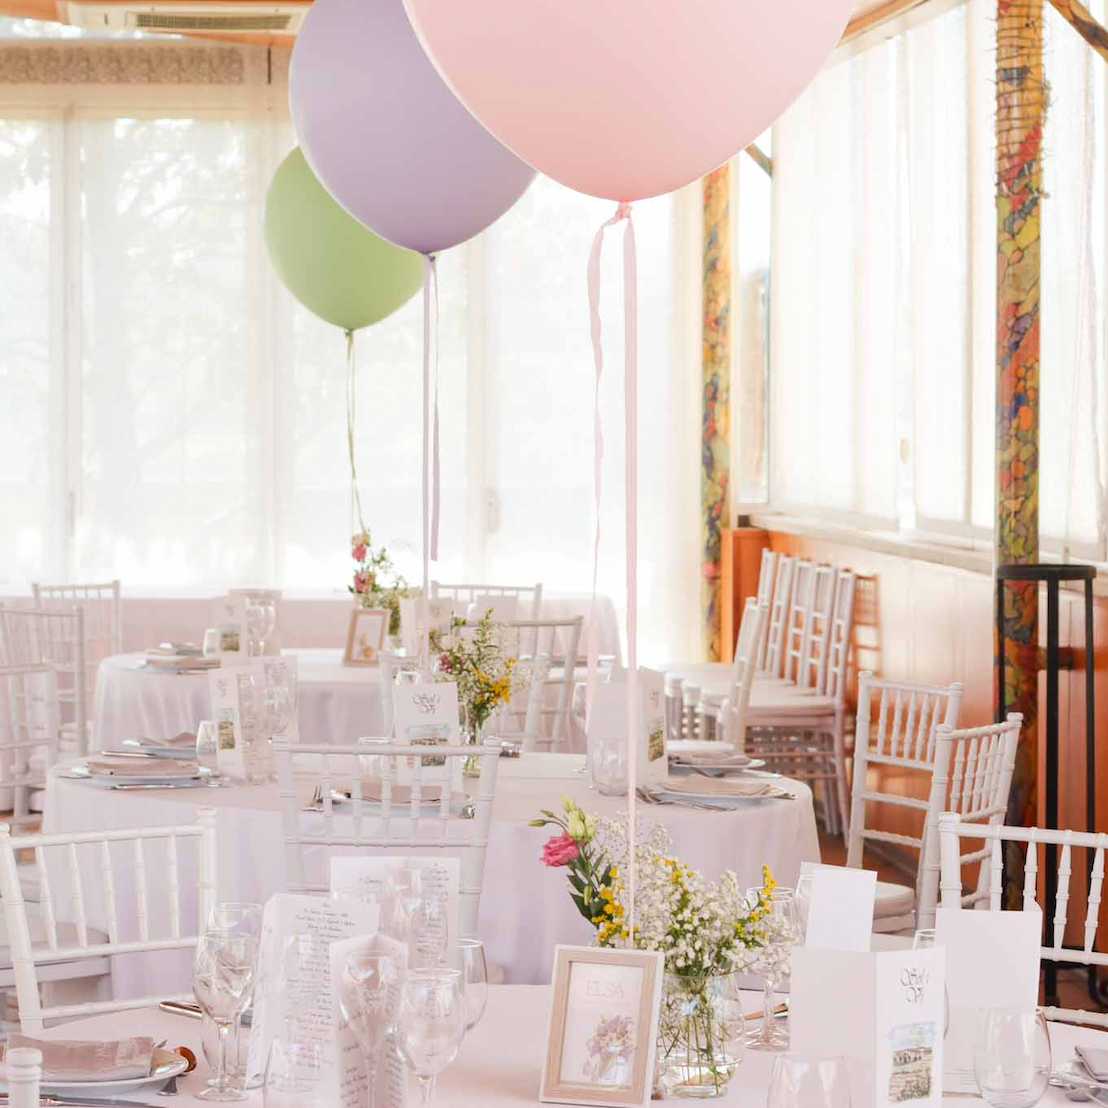 Como decorar una Sweet Table para Primera Comunión, boda o Bautizo. – La  Fiesta de Olivia